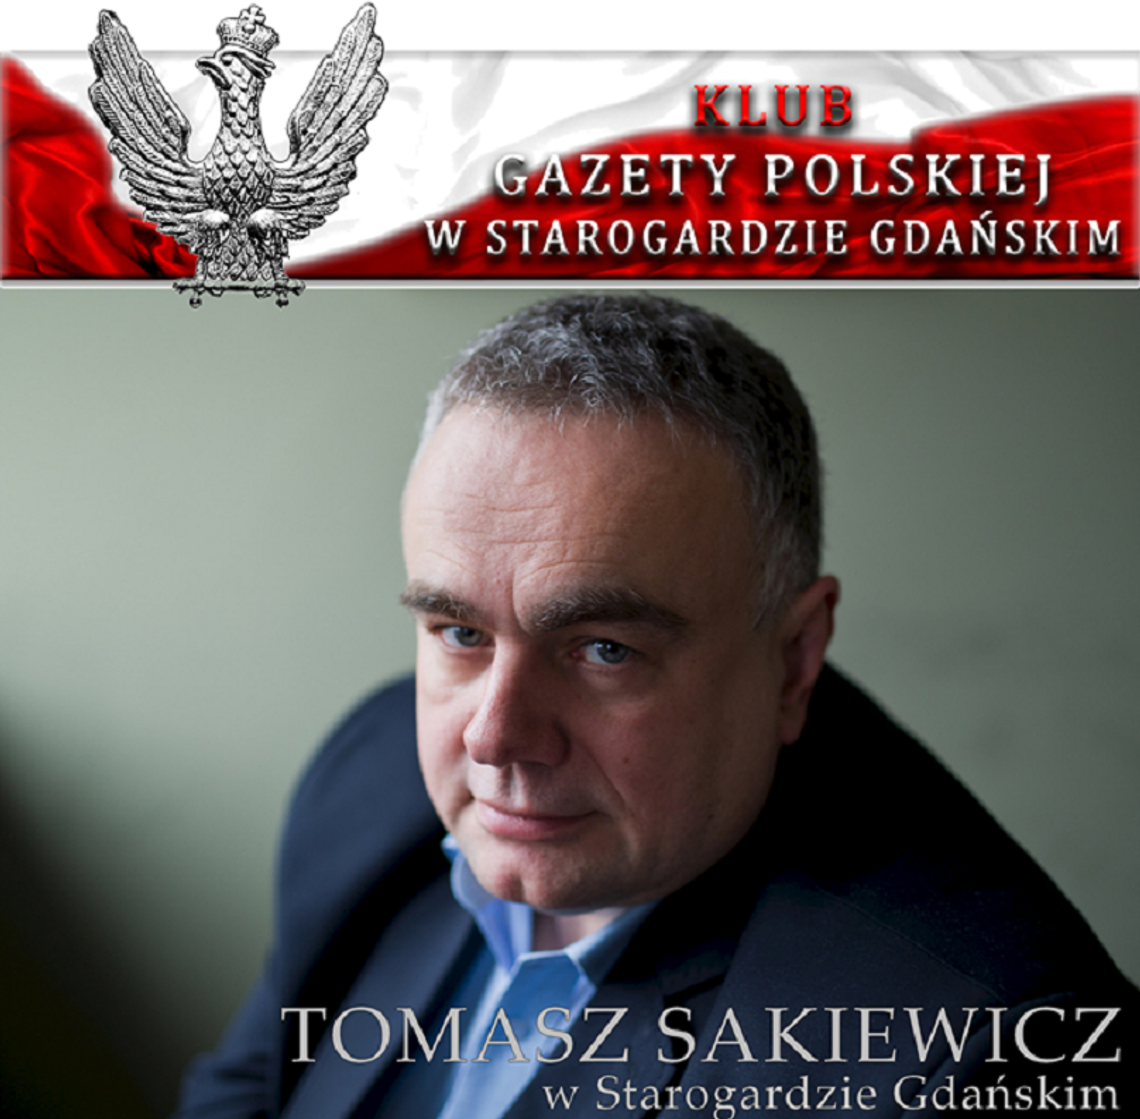 Spotkanie z Tomaszem Sakiewiczem, redaktorem naczelnym Gazety Polskiej 